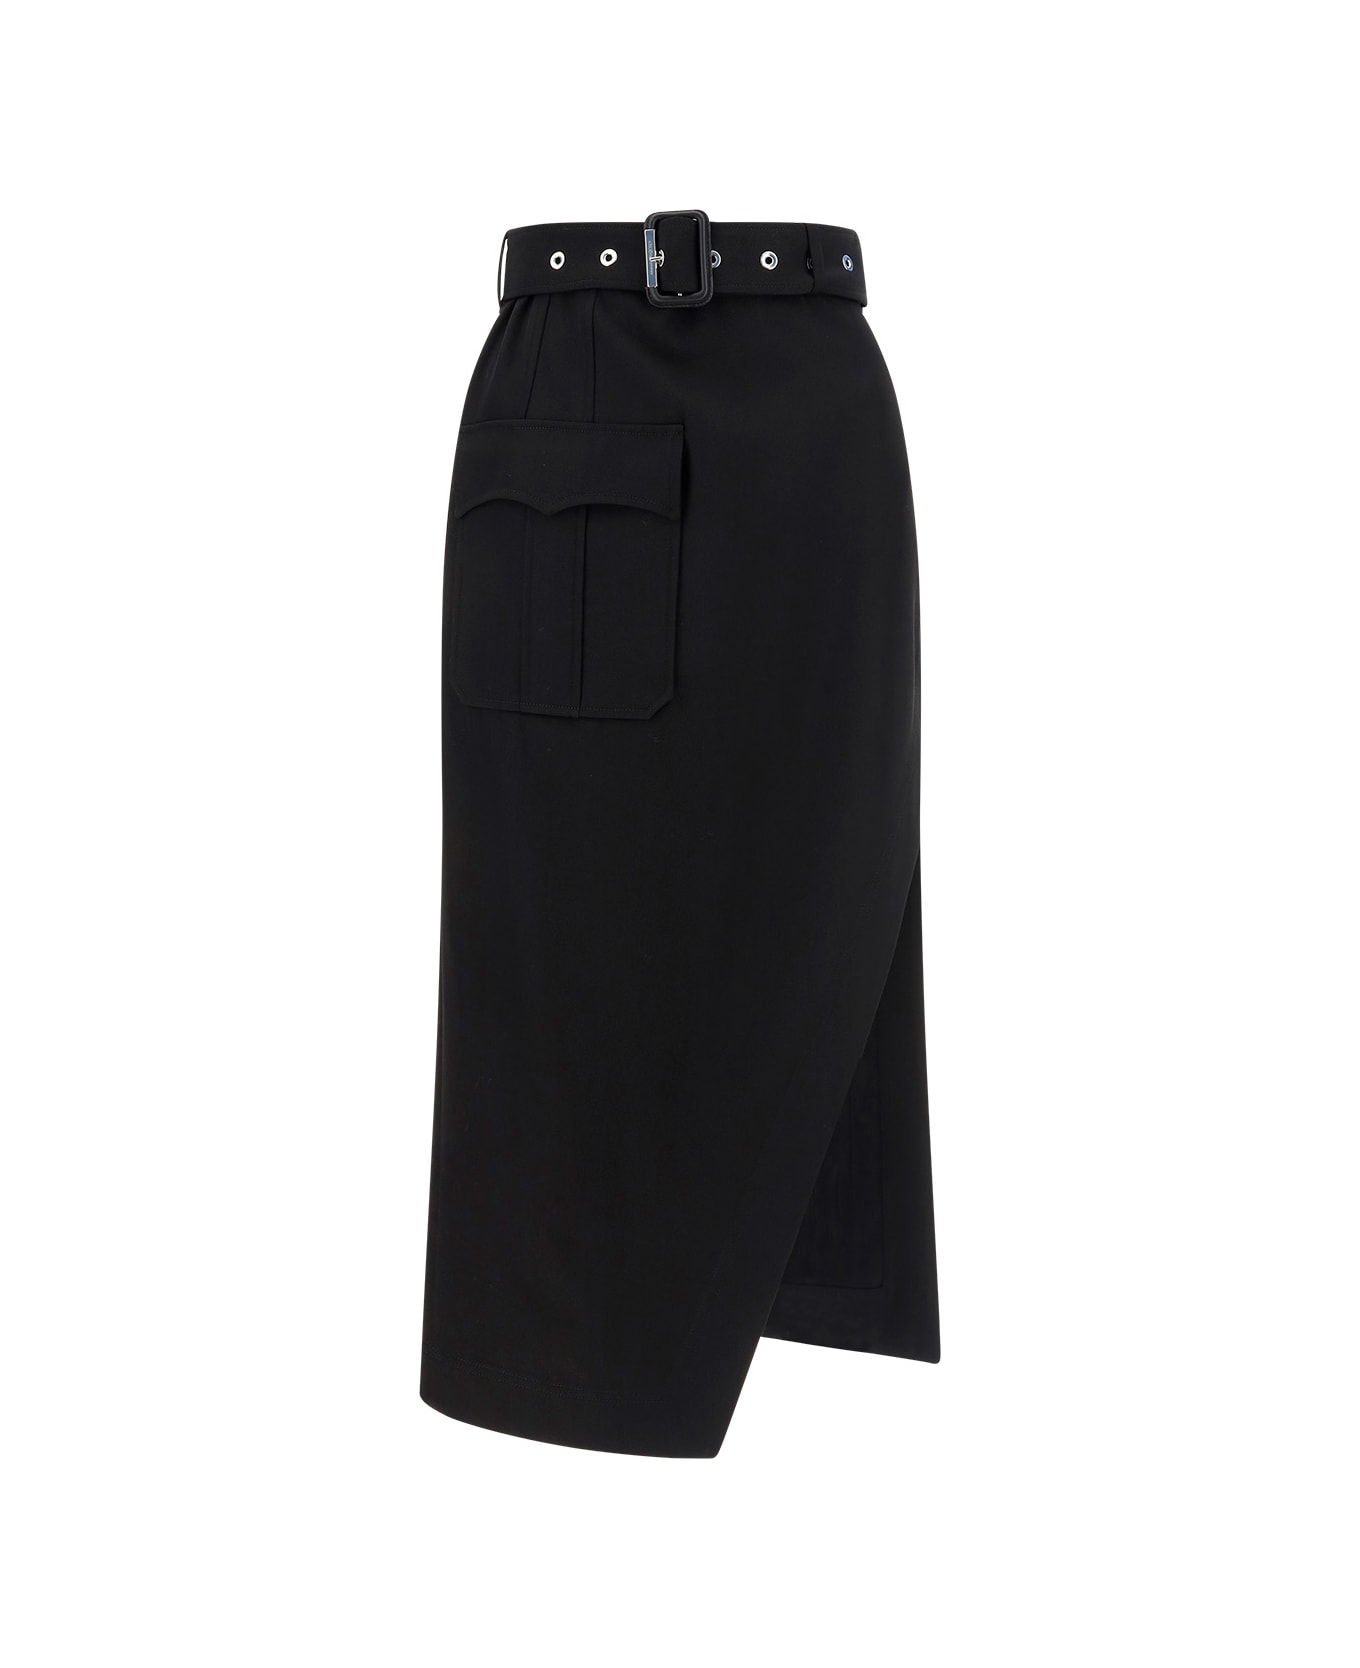 Alexander McQueen Skirt - Black スカート